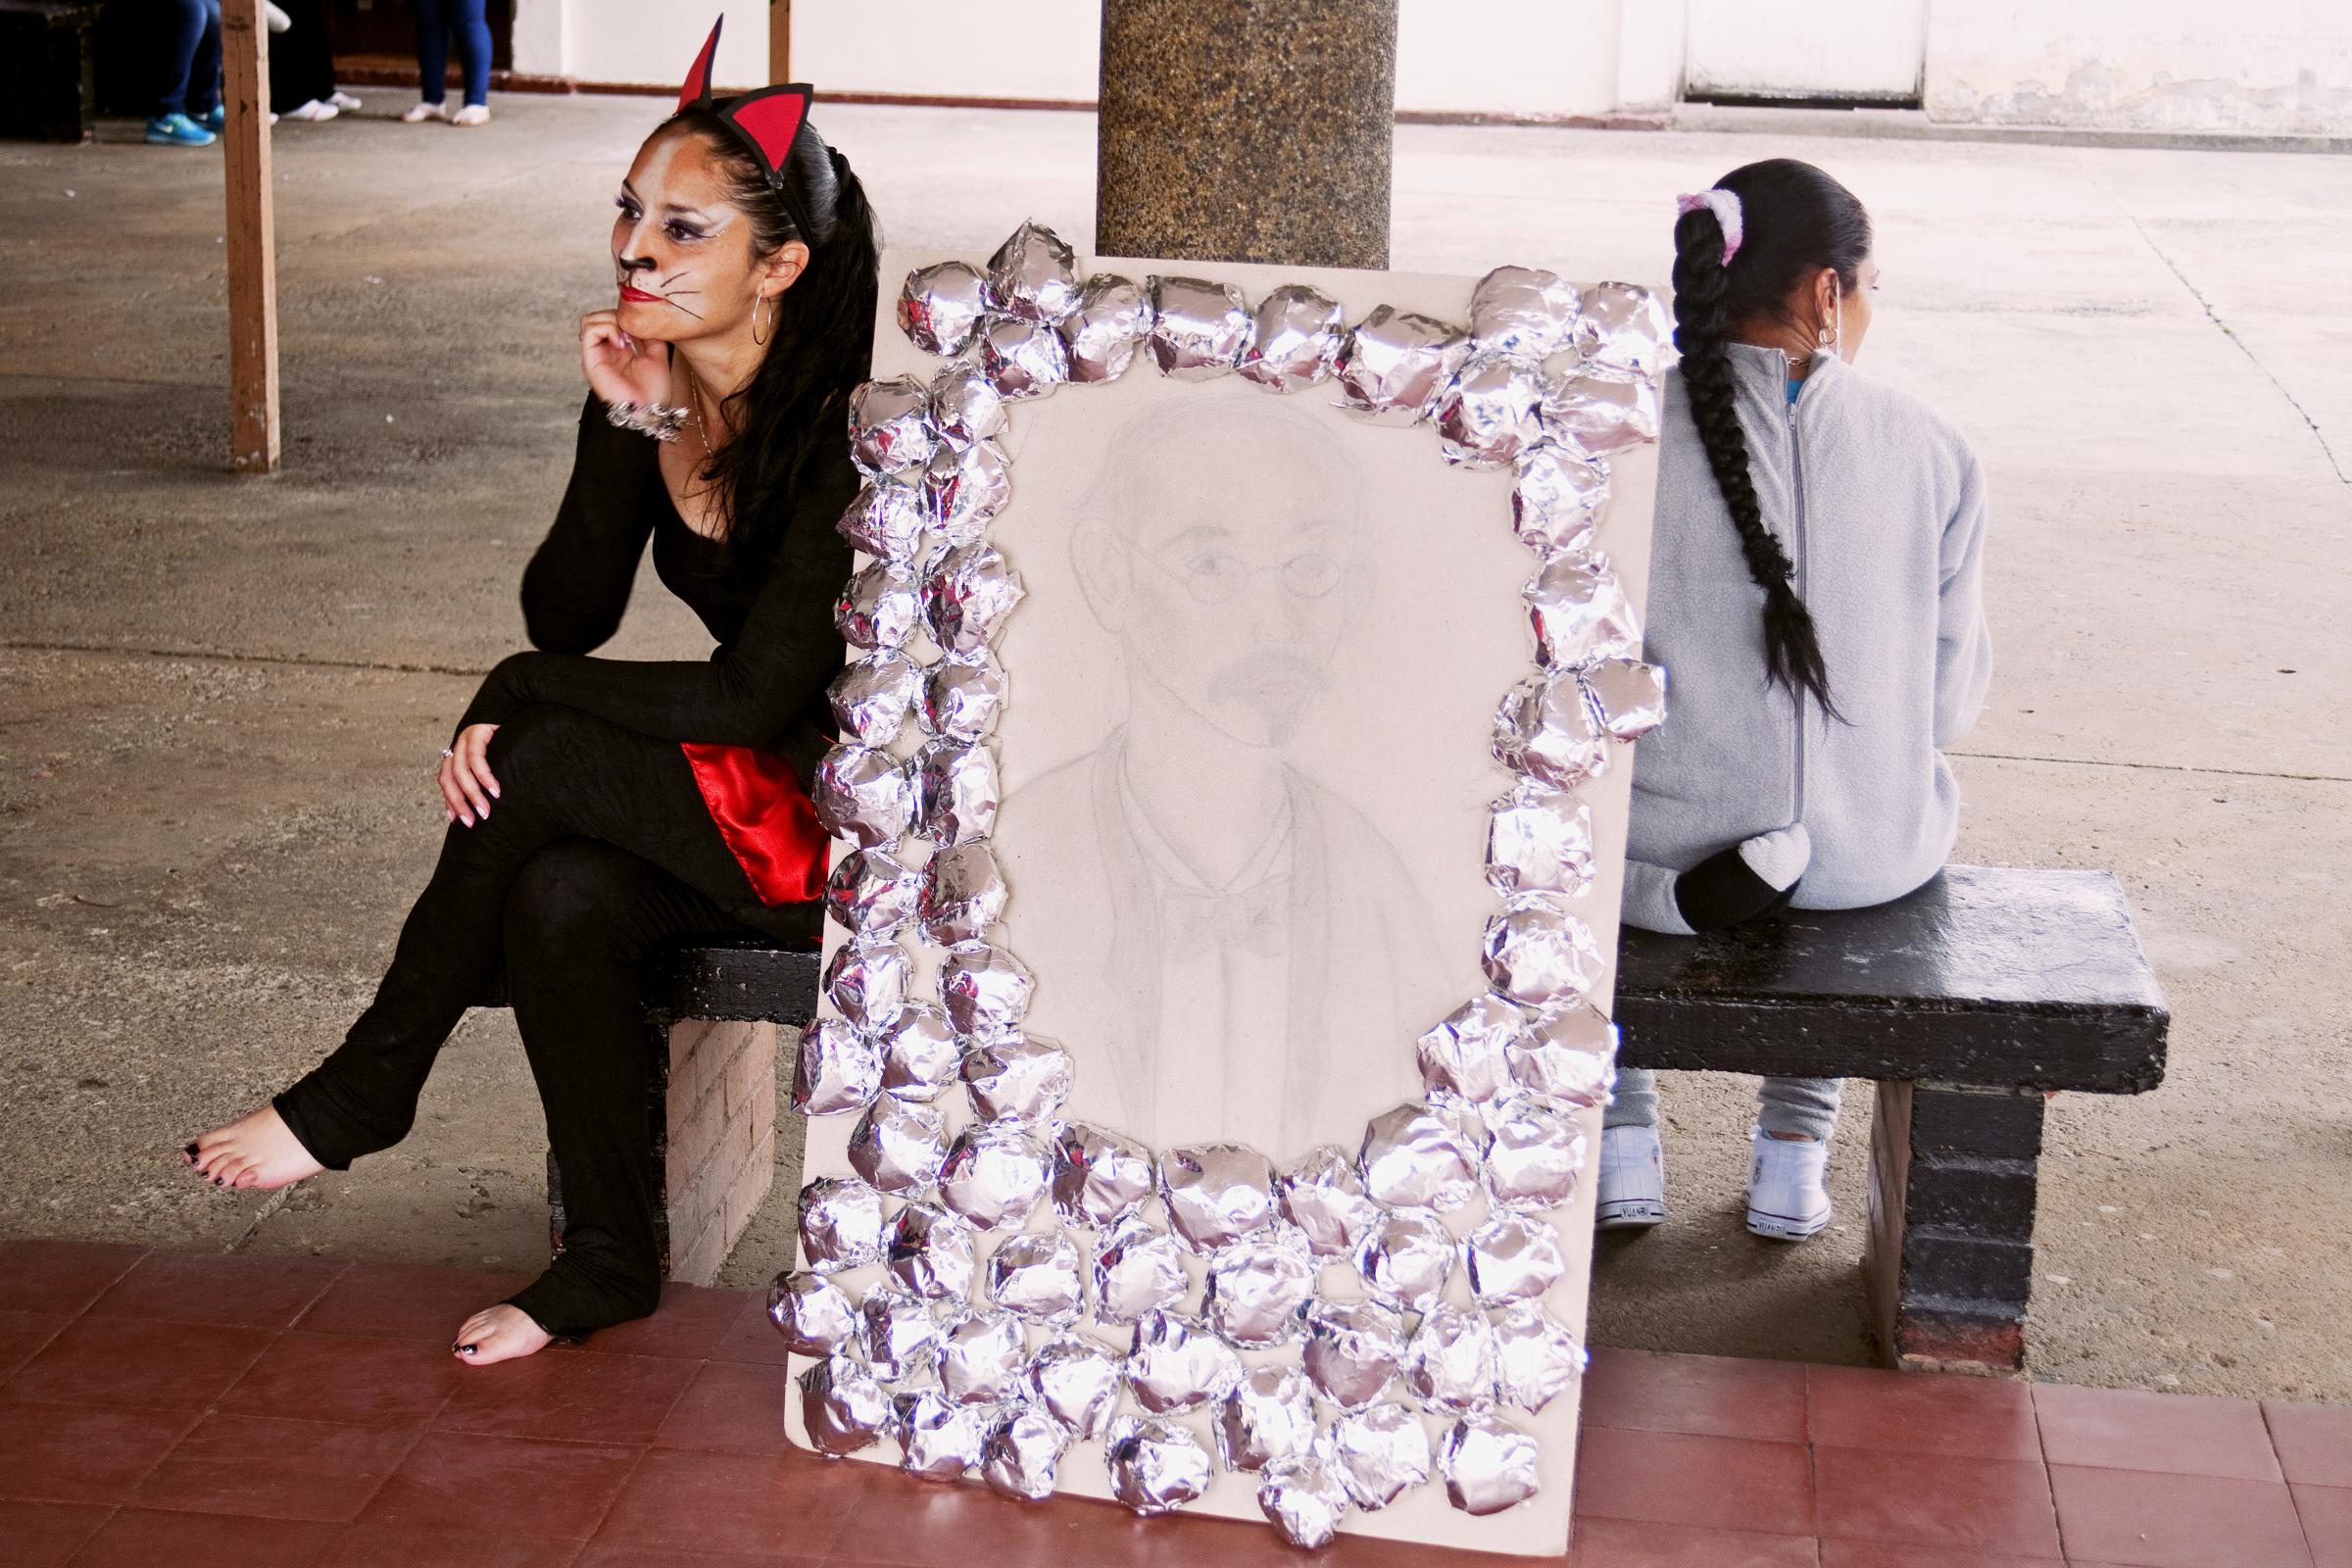 Beauty Contest in "El Buen Pastor" Jail - Bogotá, Colombia. An inmate of the "El Buen...